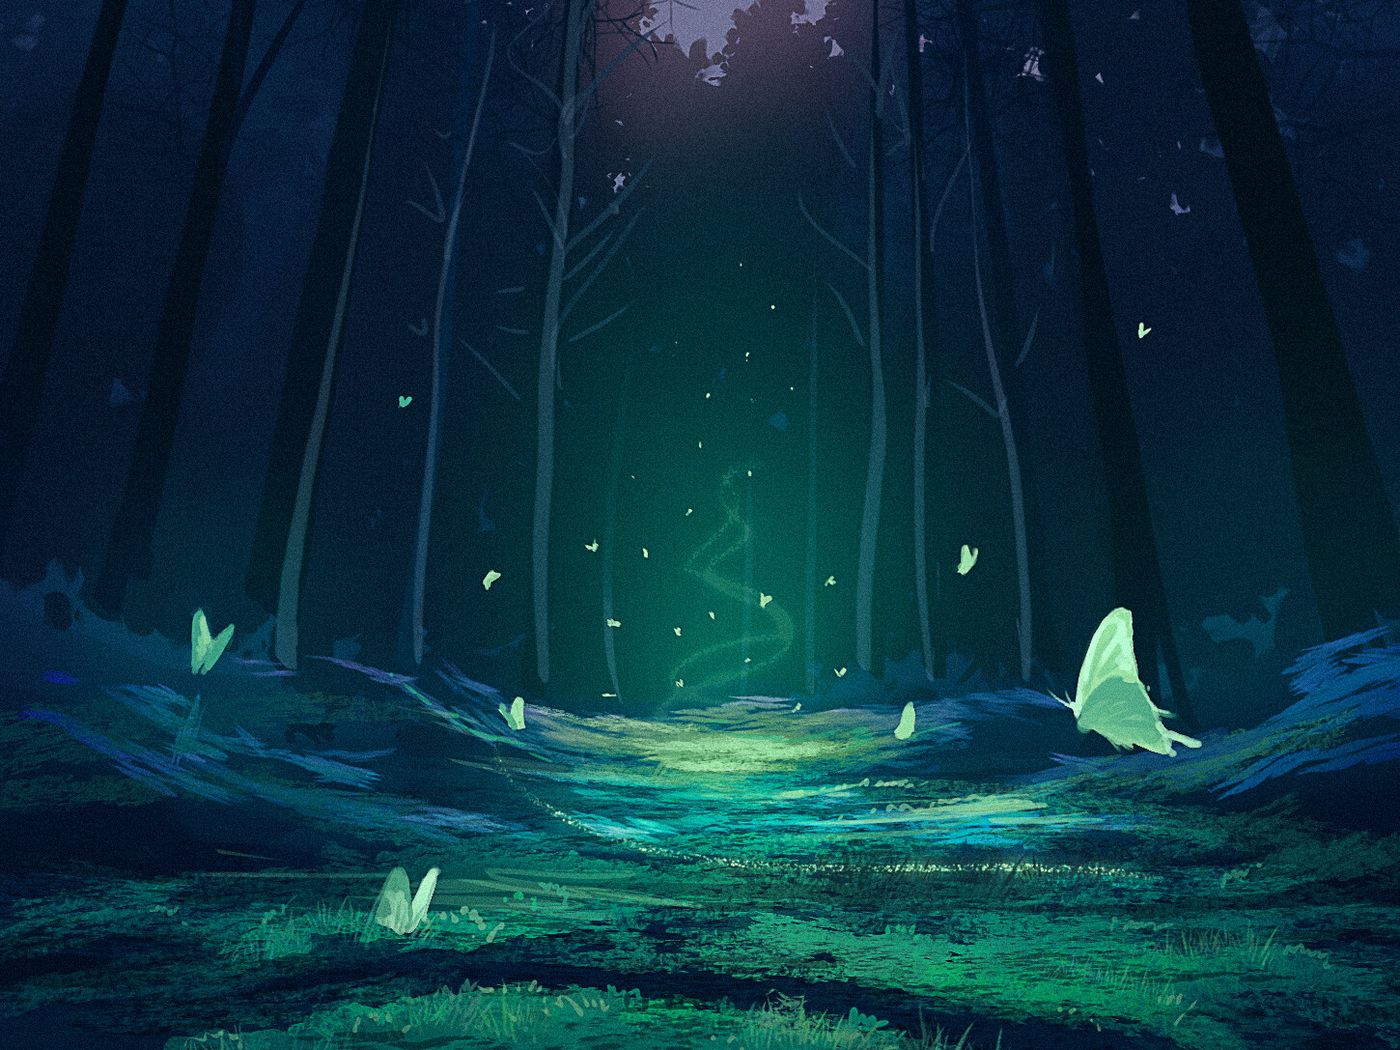 Download wallpaper 1400x1050 forest, magic, butterflies, fantasy, art standard 4:3 HD background